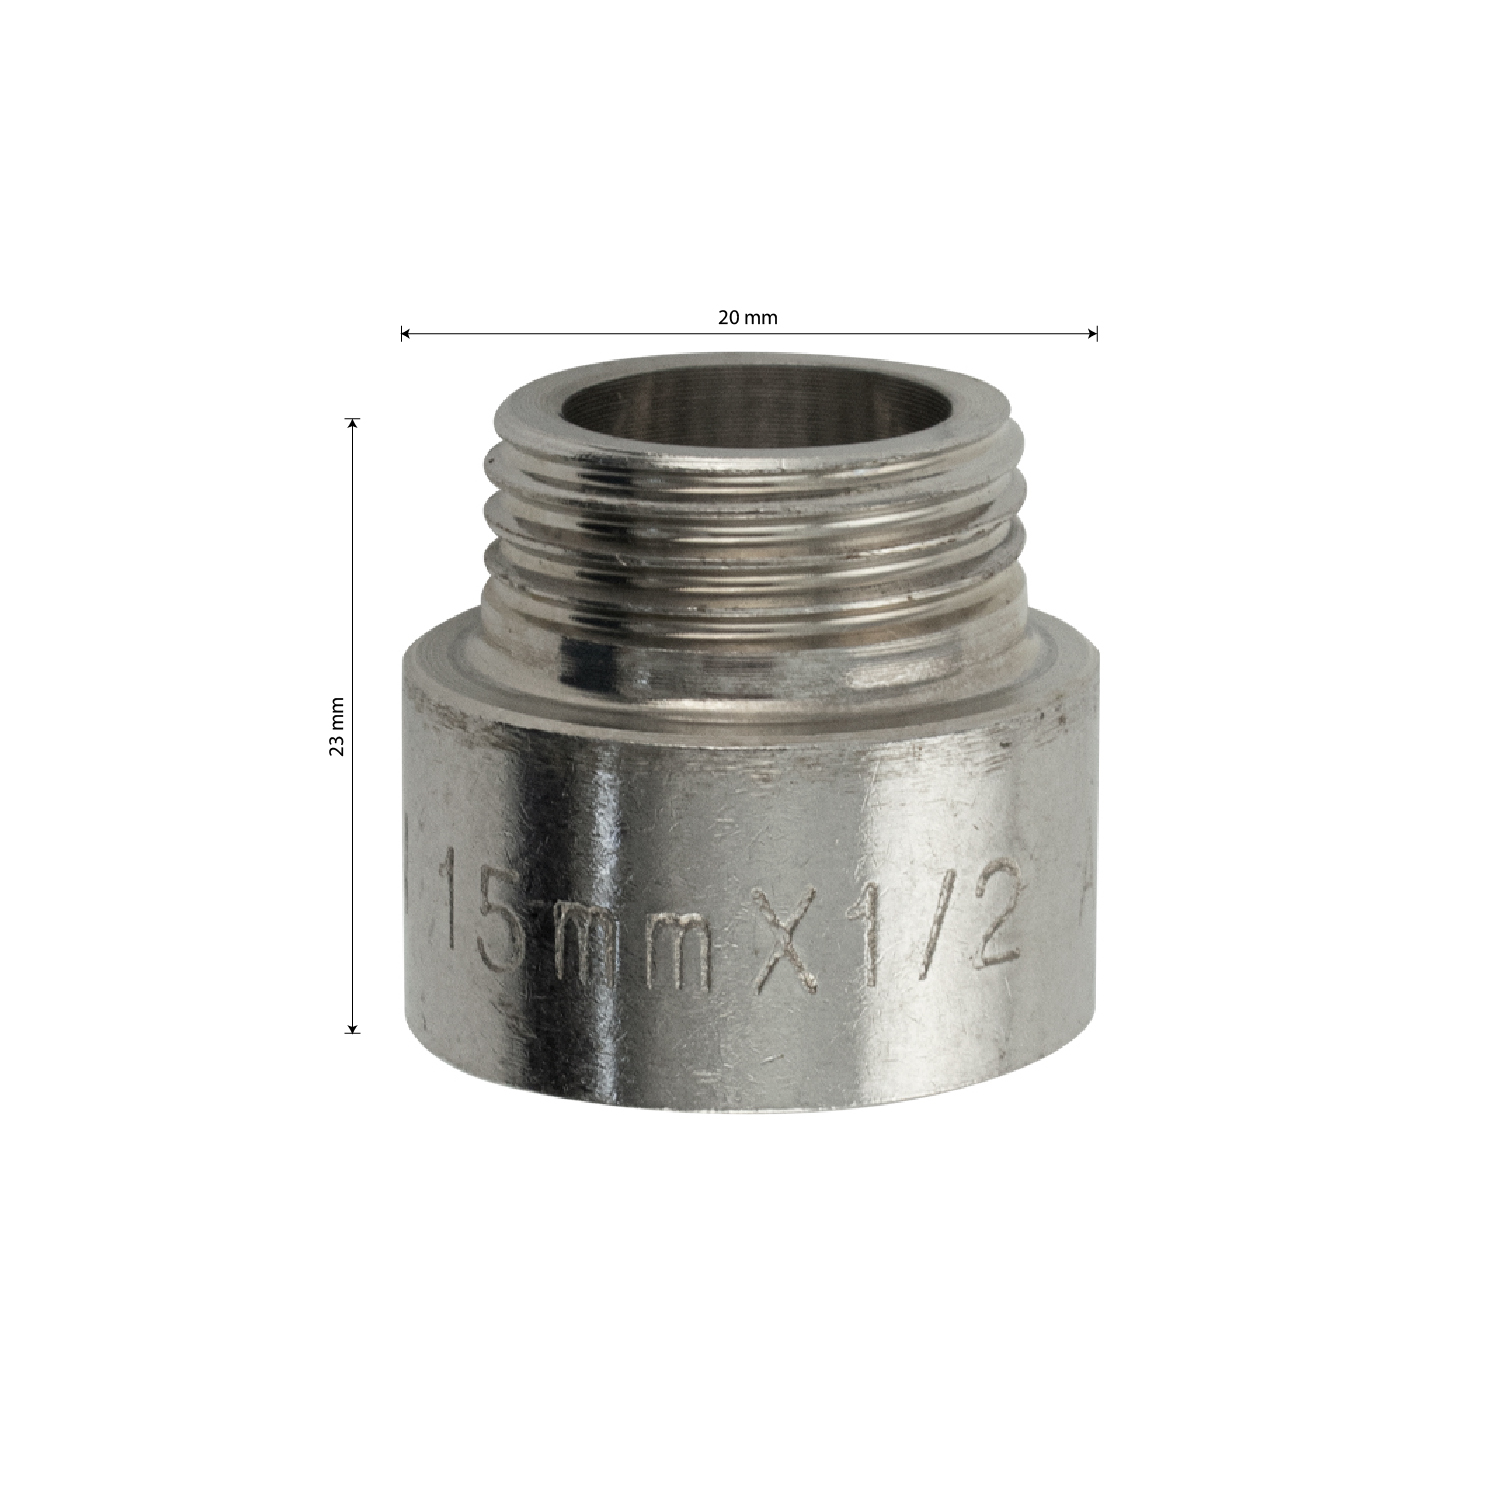 МАК - Удлинитель 15 мм, 1/2м х 1/2п, из нержавеющей стали марки 304